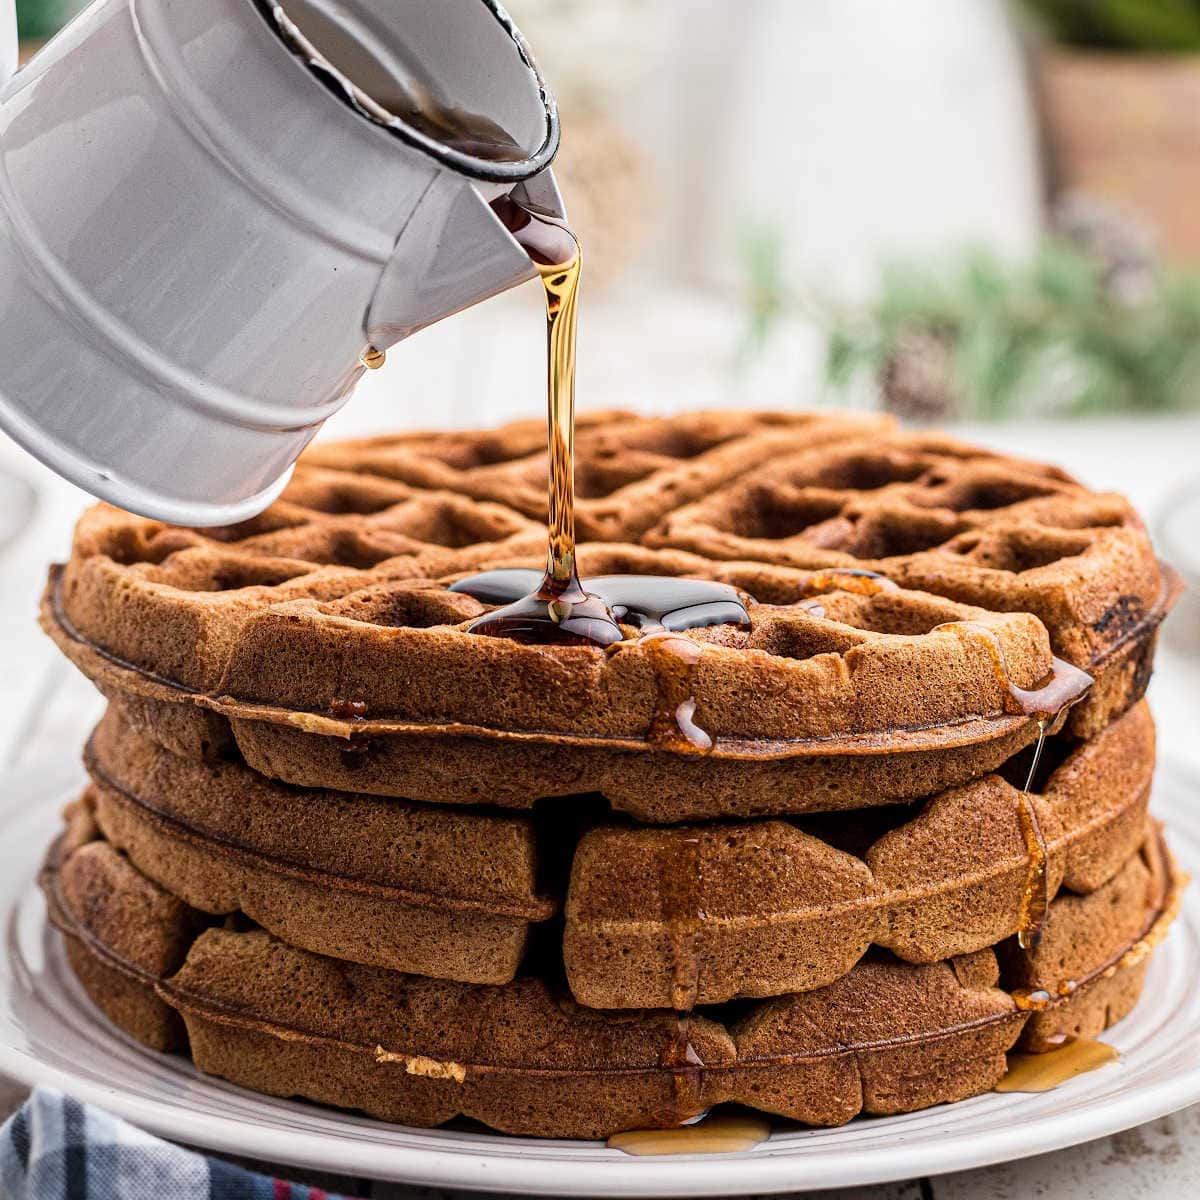 https://www.restlesschipotle.com/wp-content/uploads/2022/10/Gingerbread-Waffles-feat.jpg